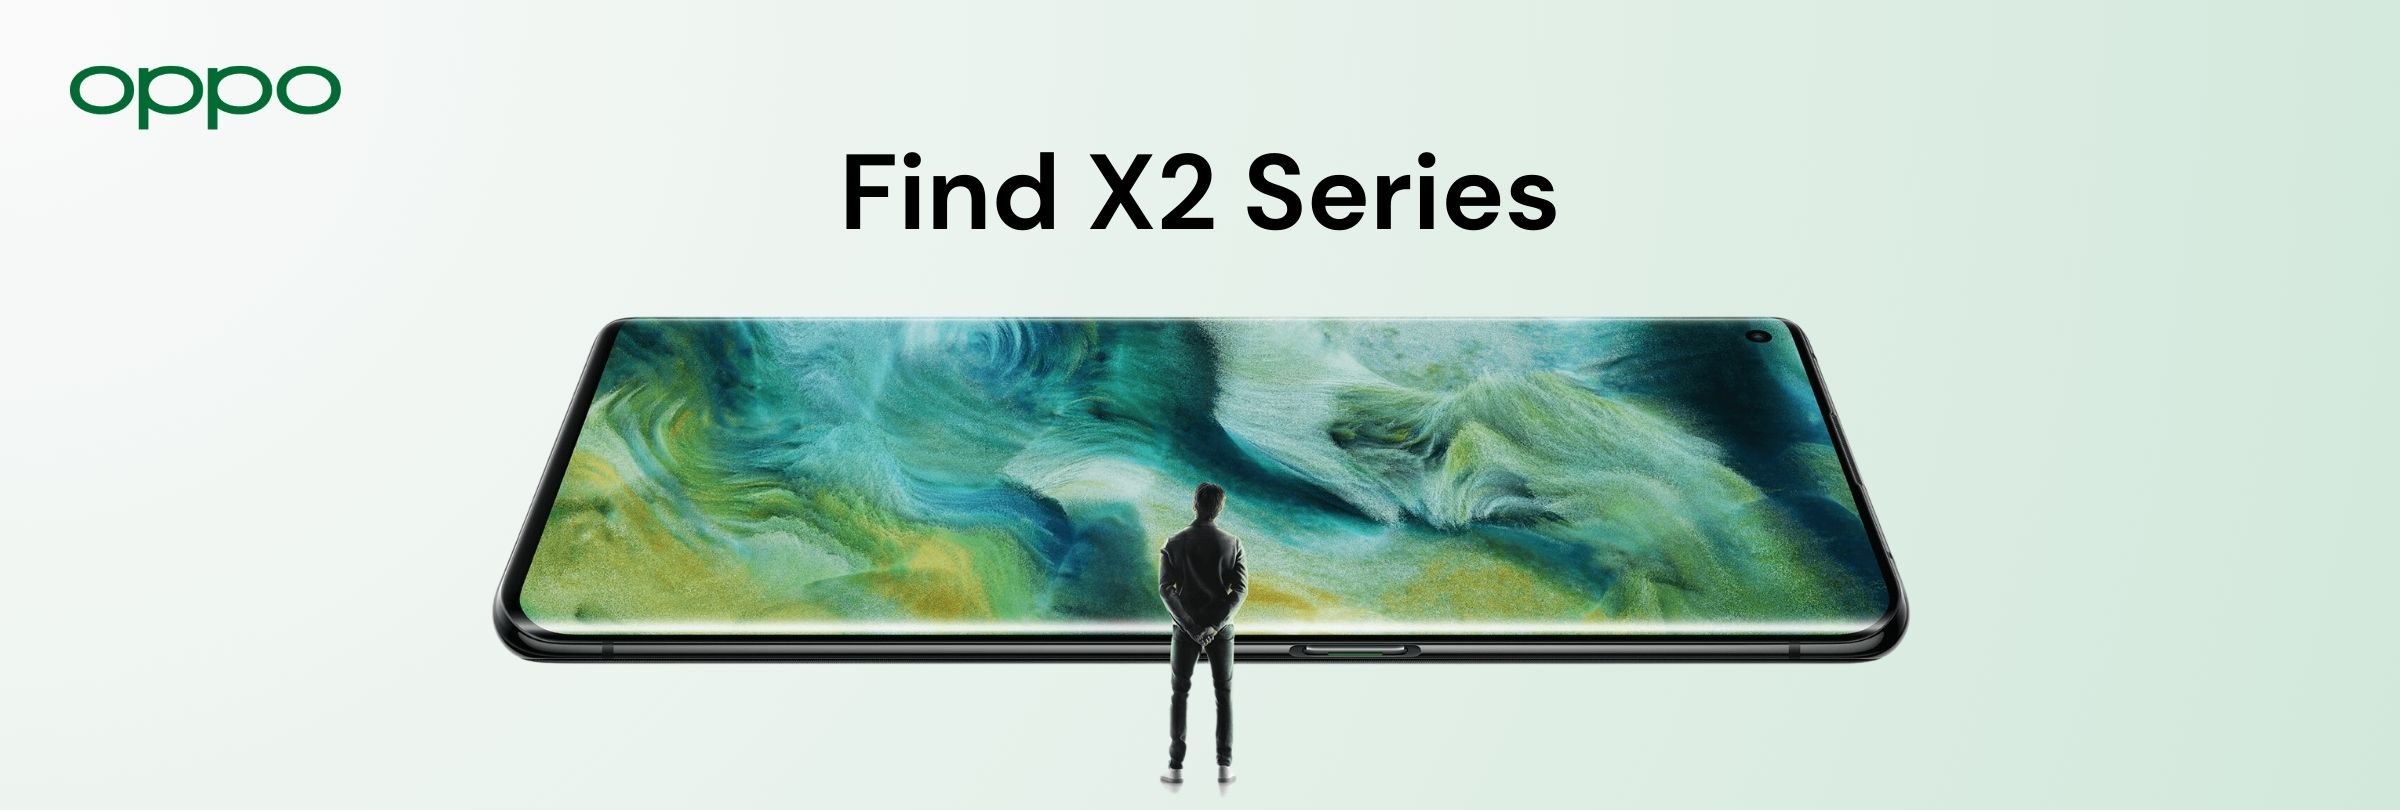 Find X2 Series